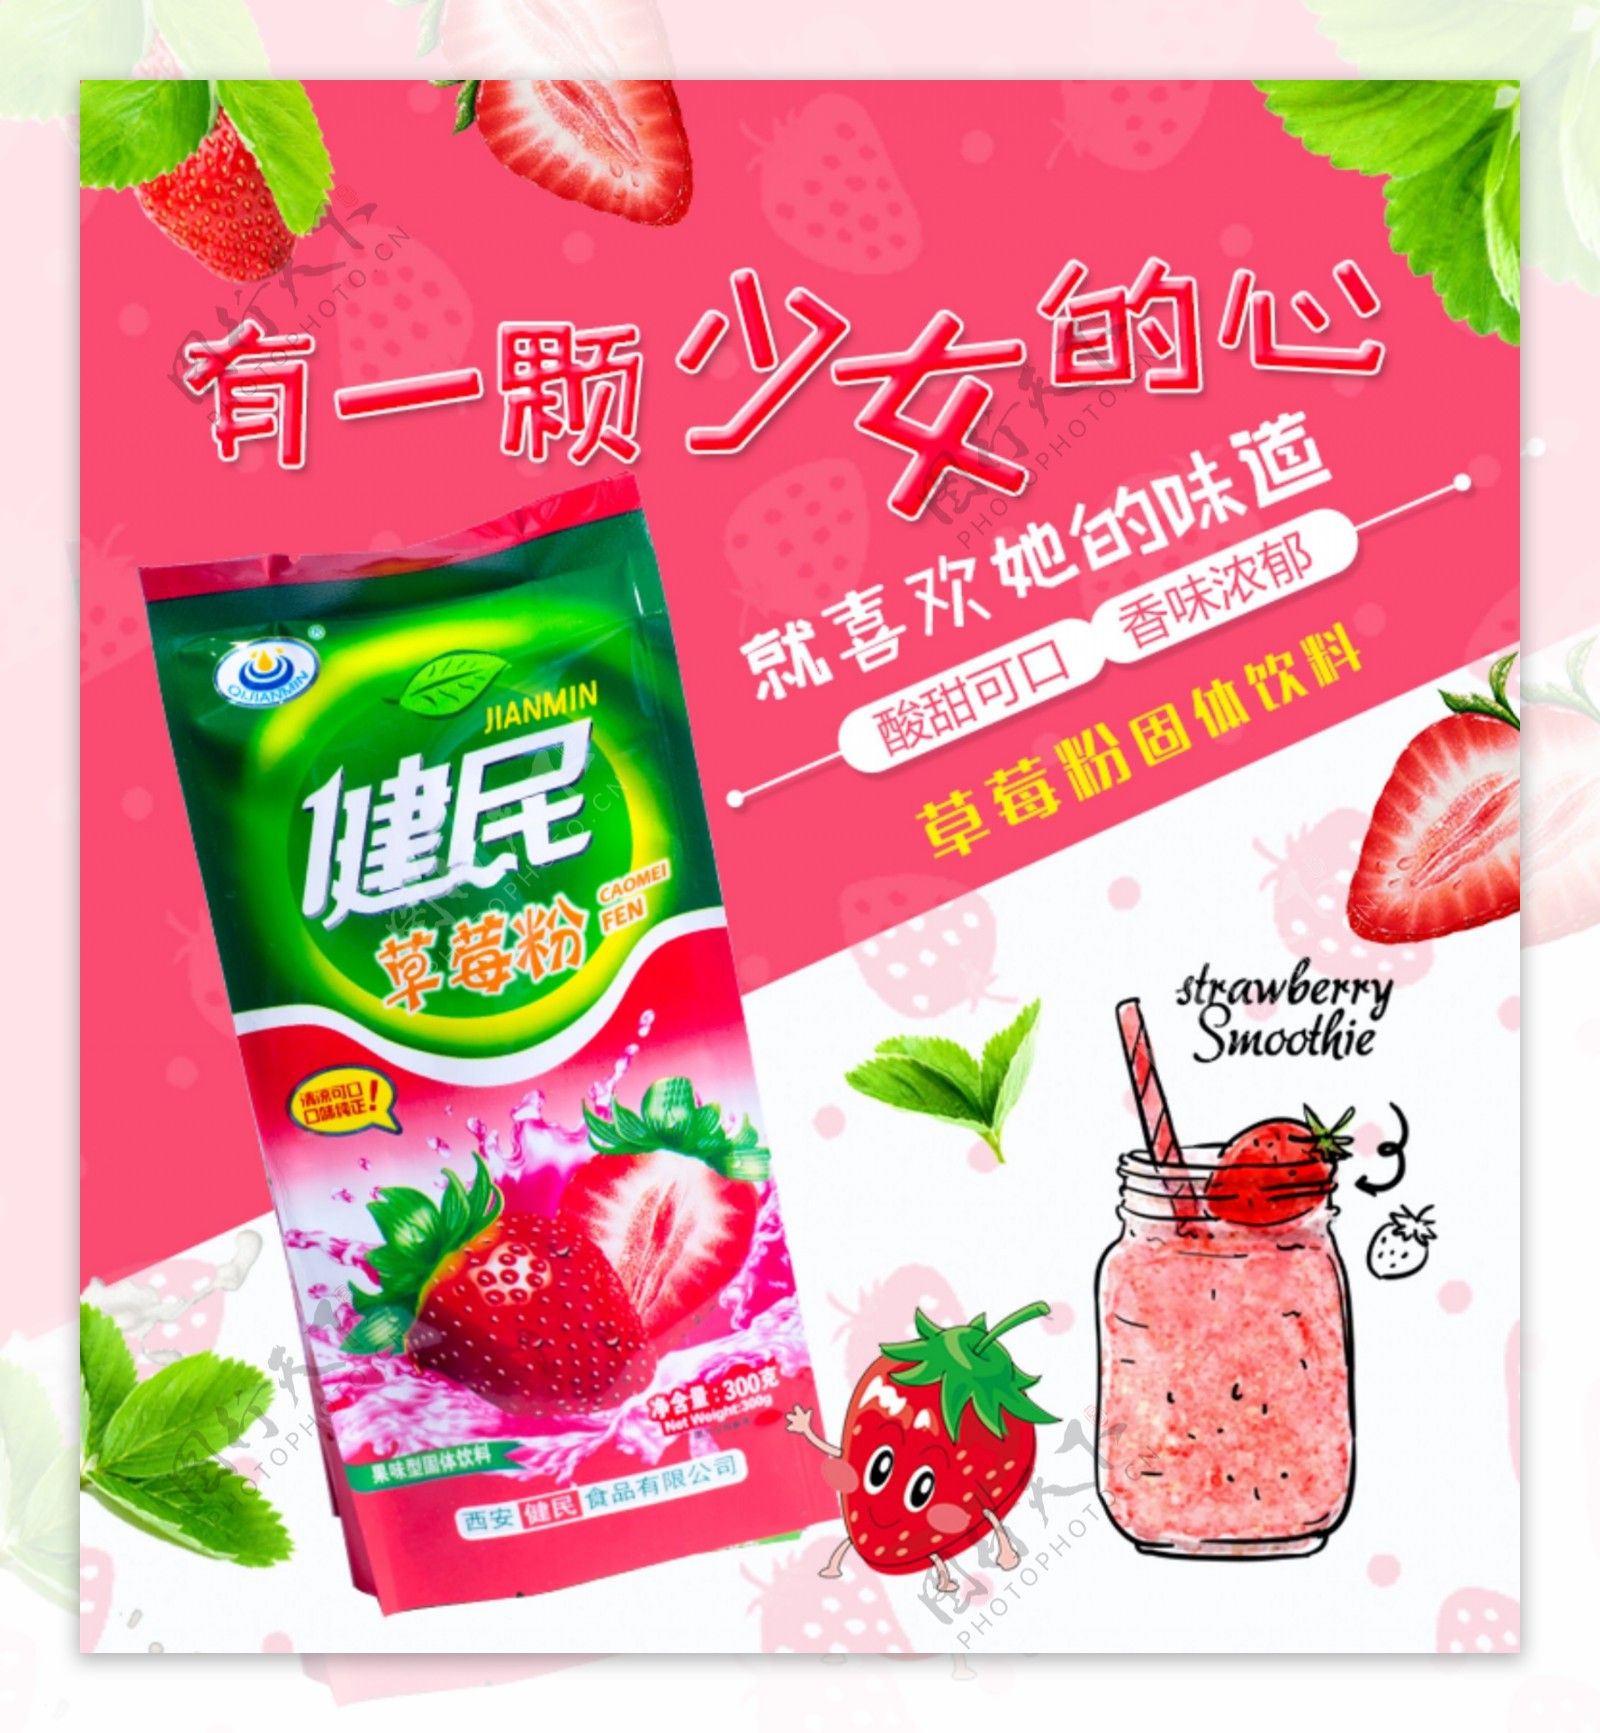 草莓粉饮料淘宝主图